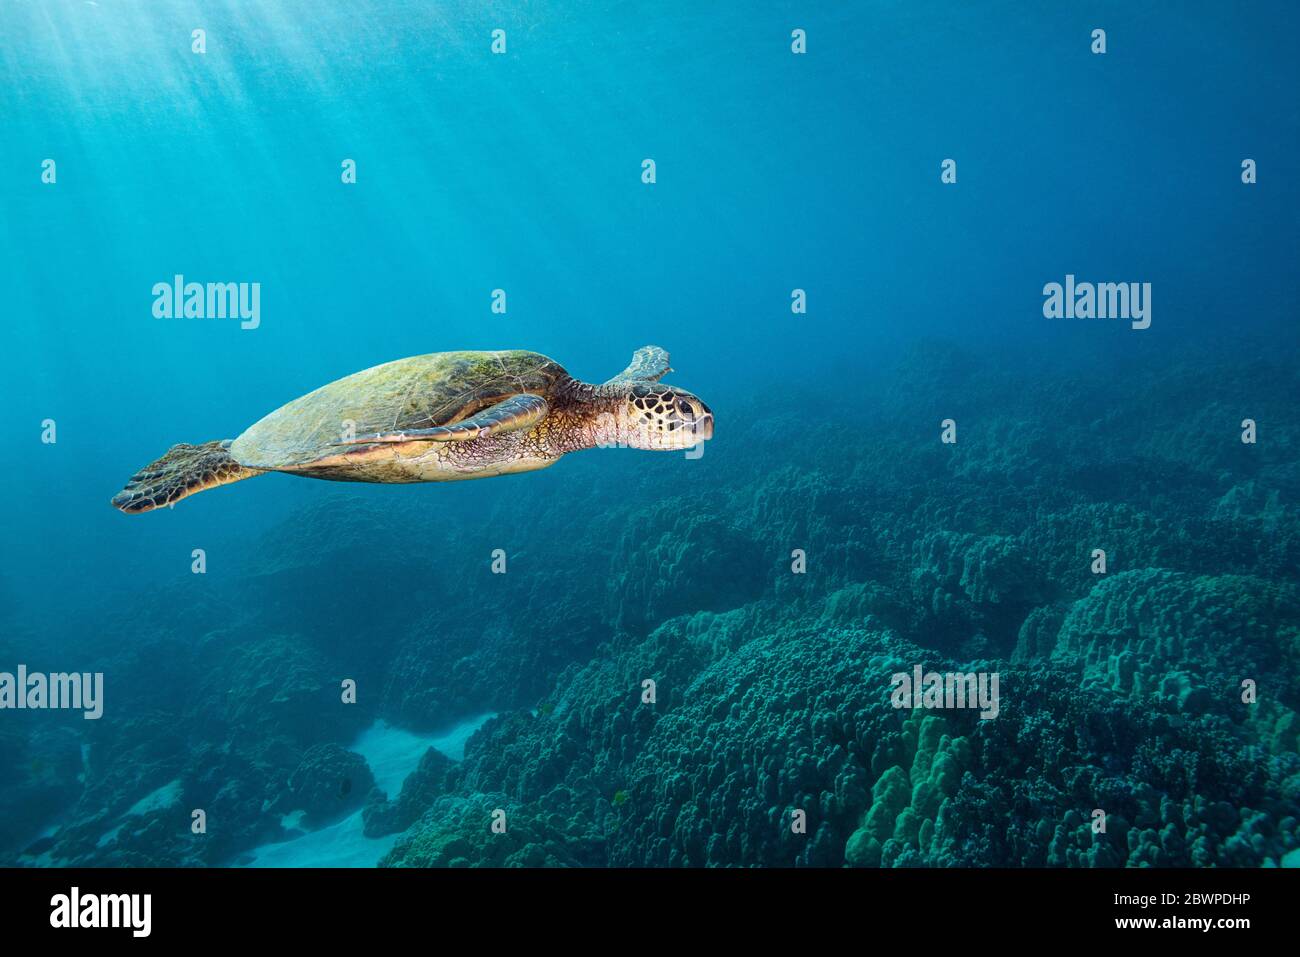 Grüne Meeresschildkröte oder Honu, Chelonia mydas, Schwimmen über Korallenriff, Honaunau, South Kona, Hawaii, USA ( Zentral Pazifik ) Stockfoto